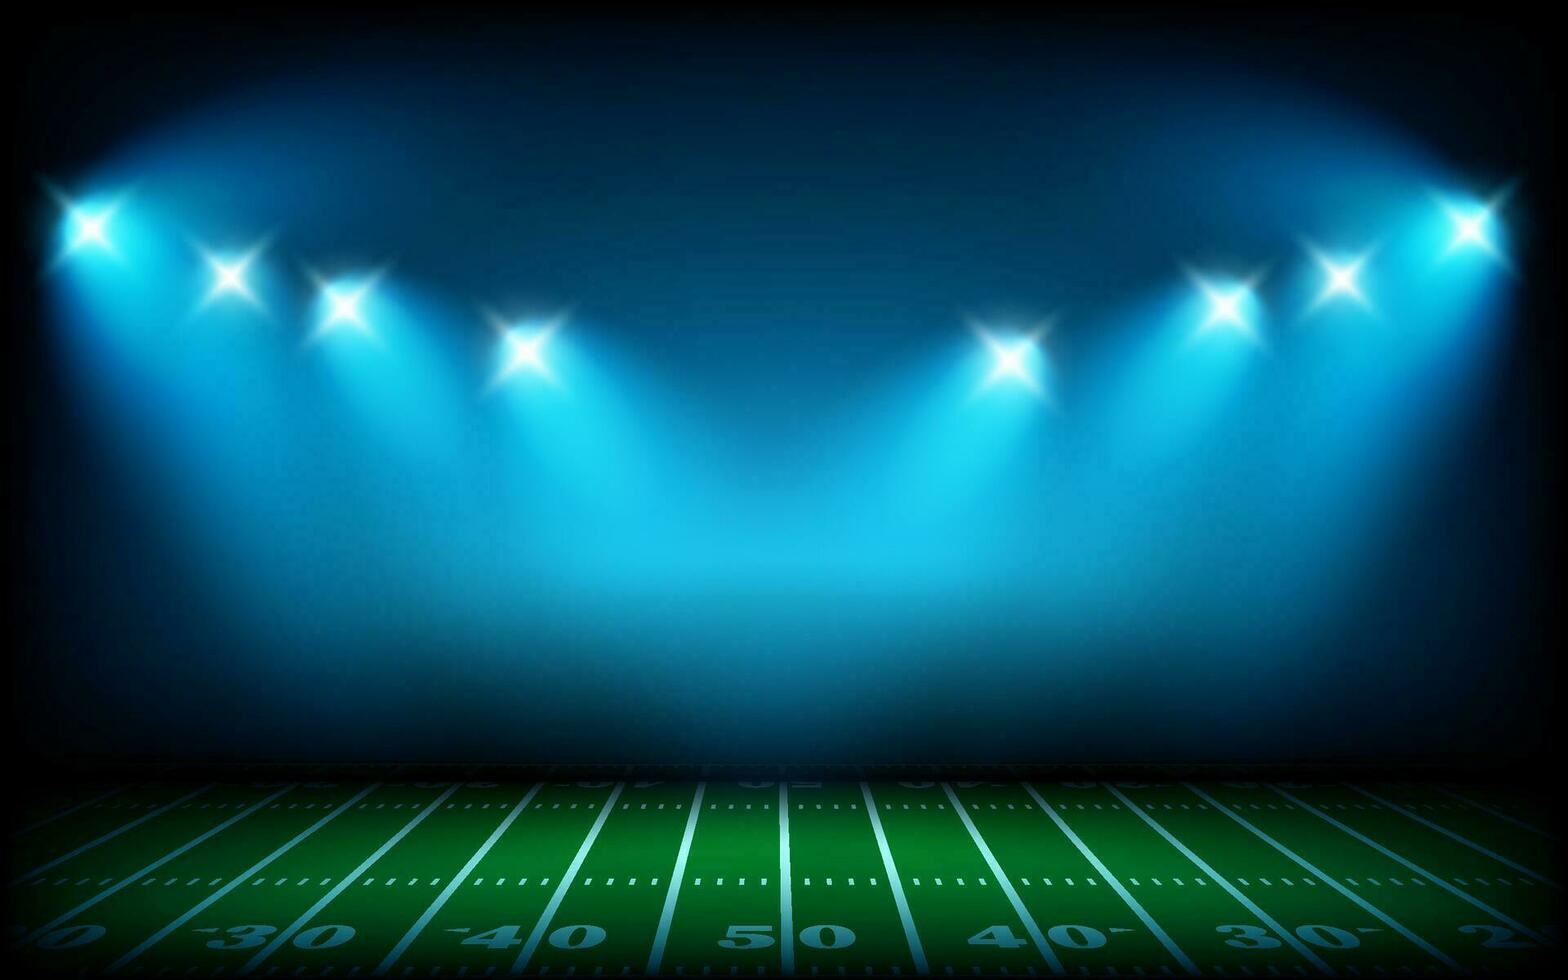 iluminado americano fútbol americano estadio con proyectores 3d vector ilustración